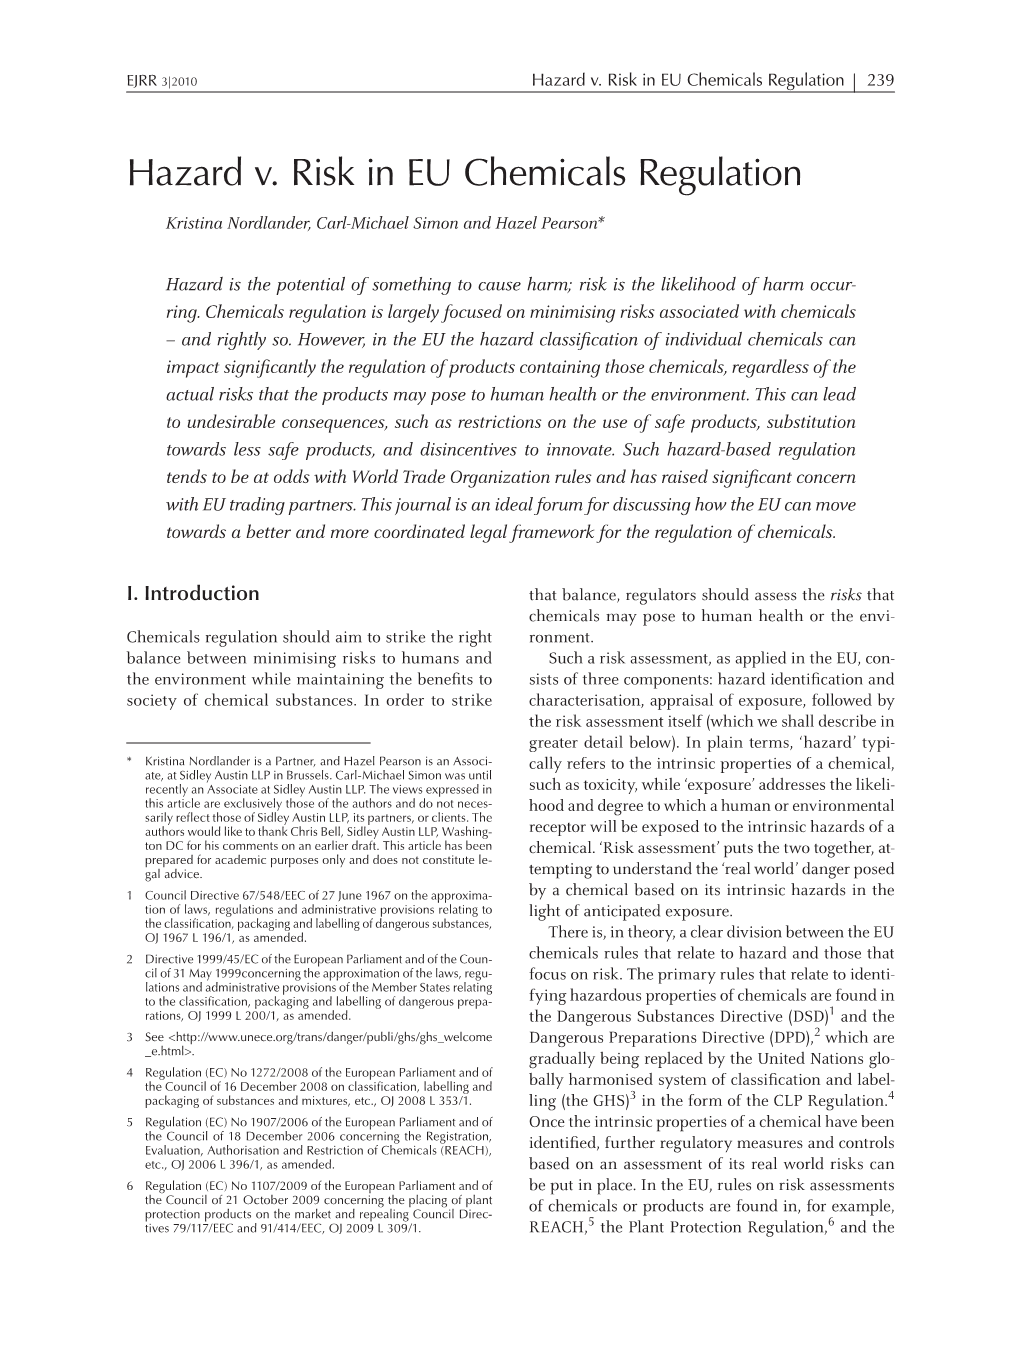 Hazard V. Risk in EU Chemicals Regulation 239